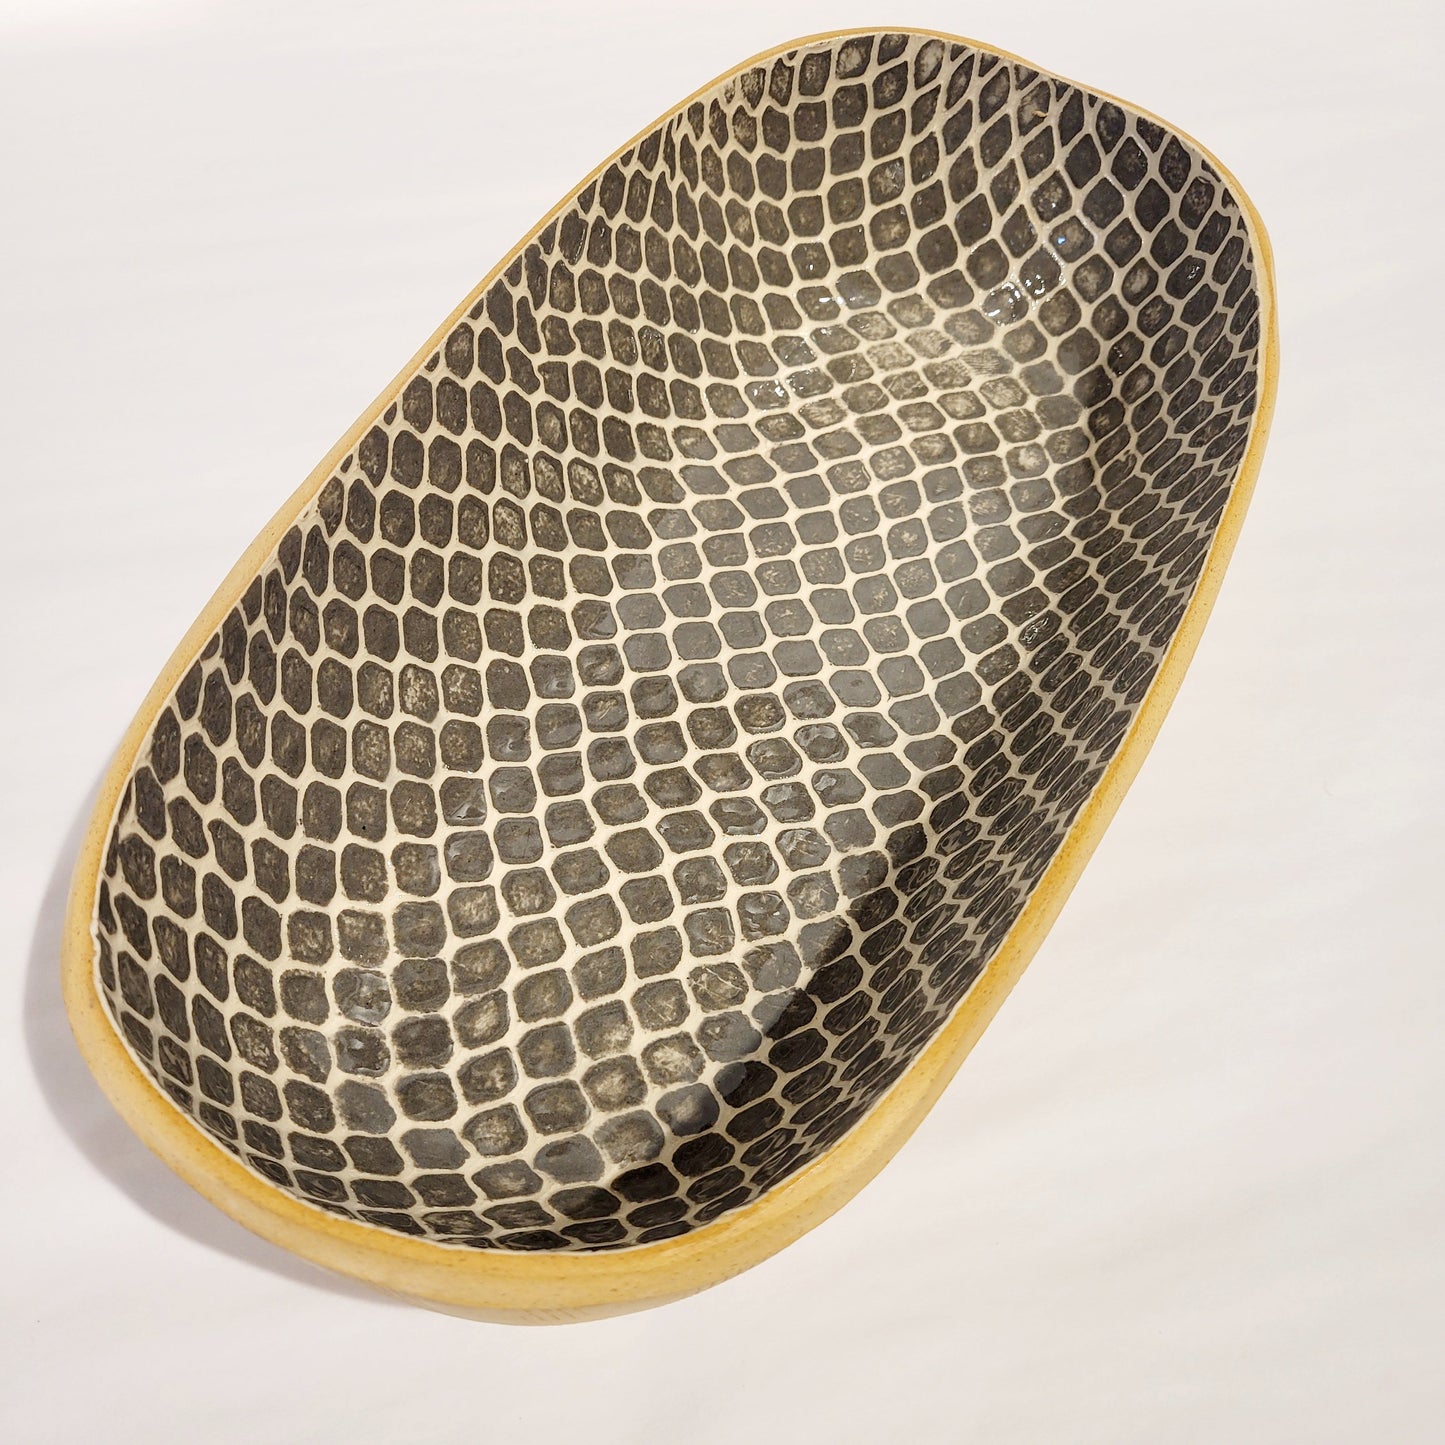 Terrafirma Ceramics - Charcoal Taj Bread Basket